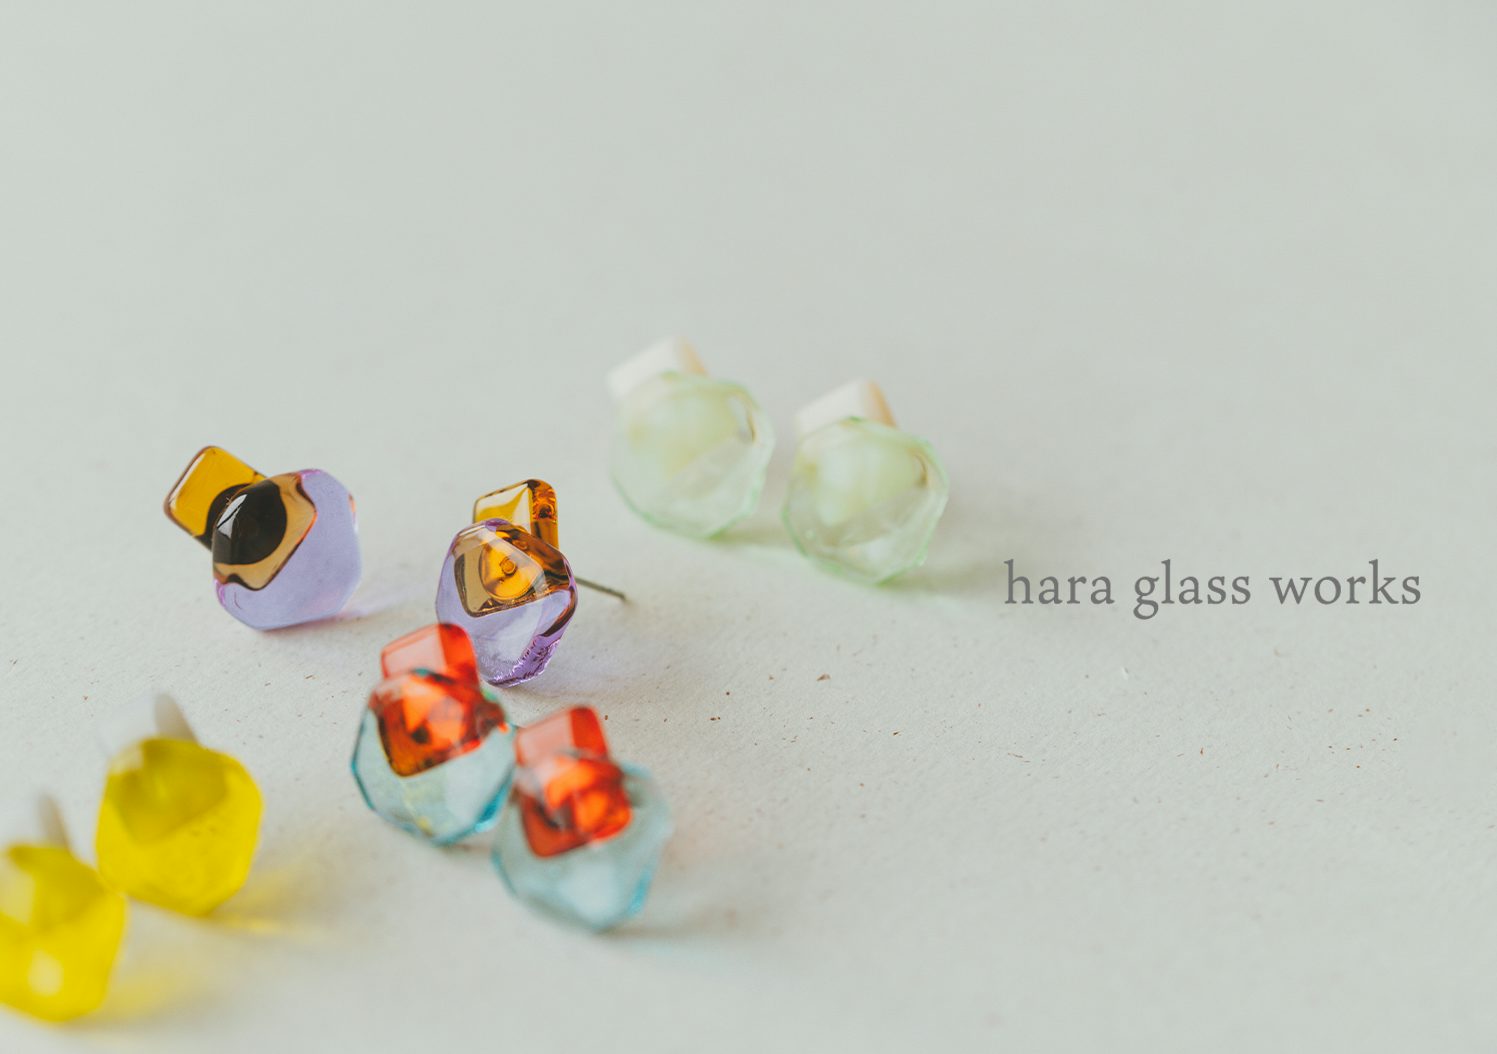 hara glass works / ガラスのイヤーアクセサリーの画像